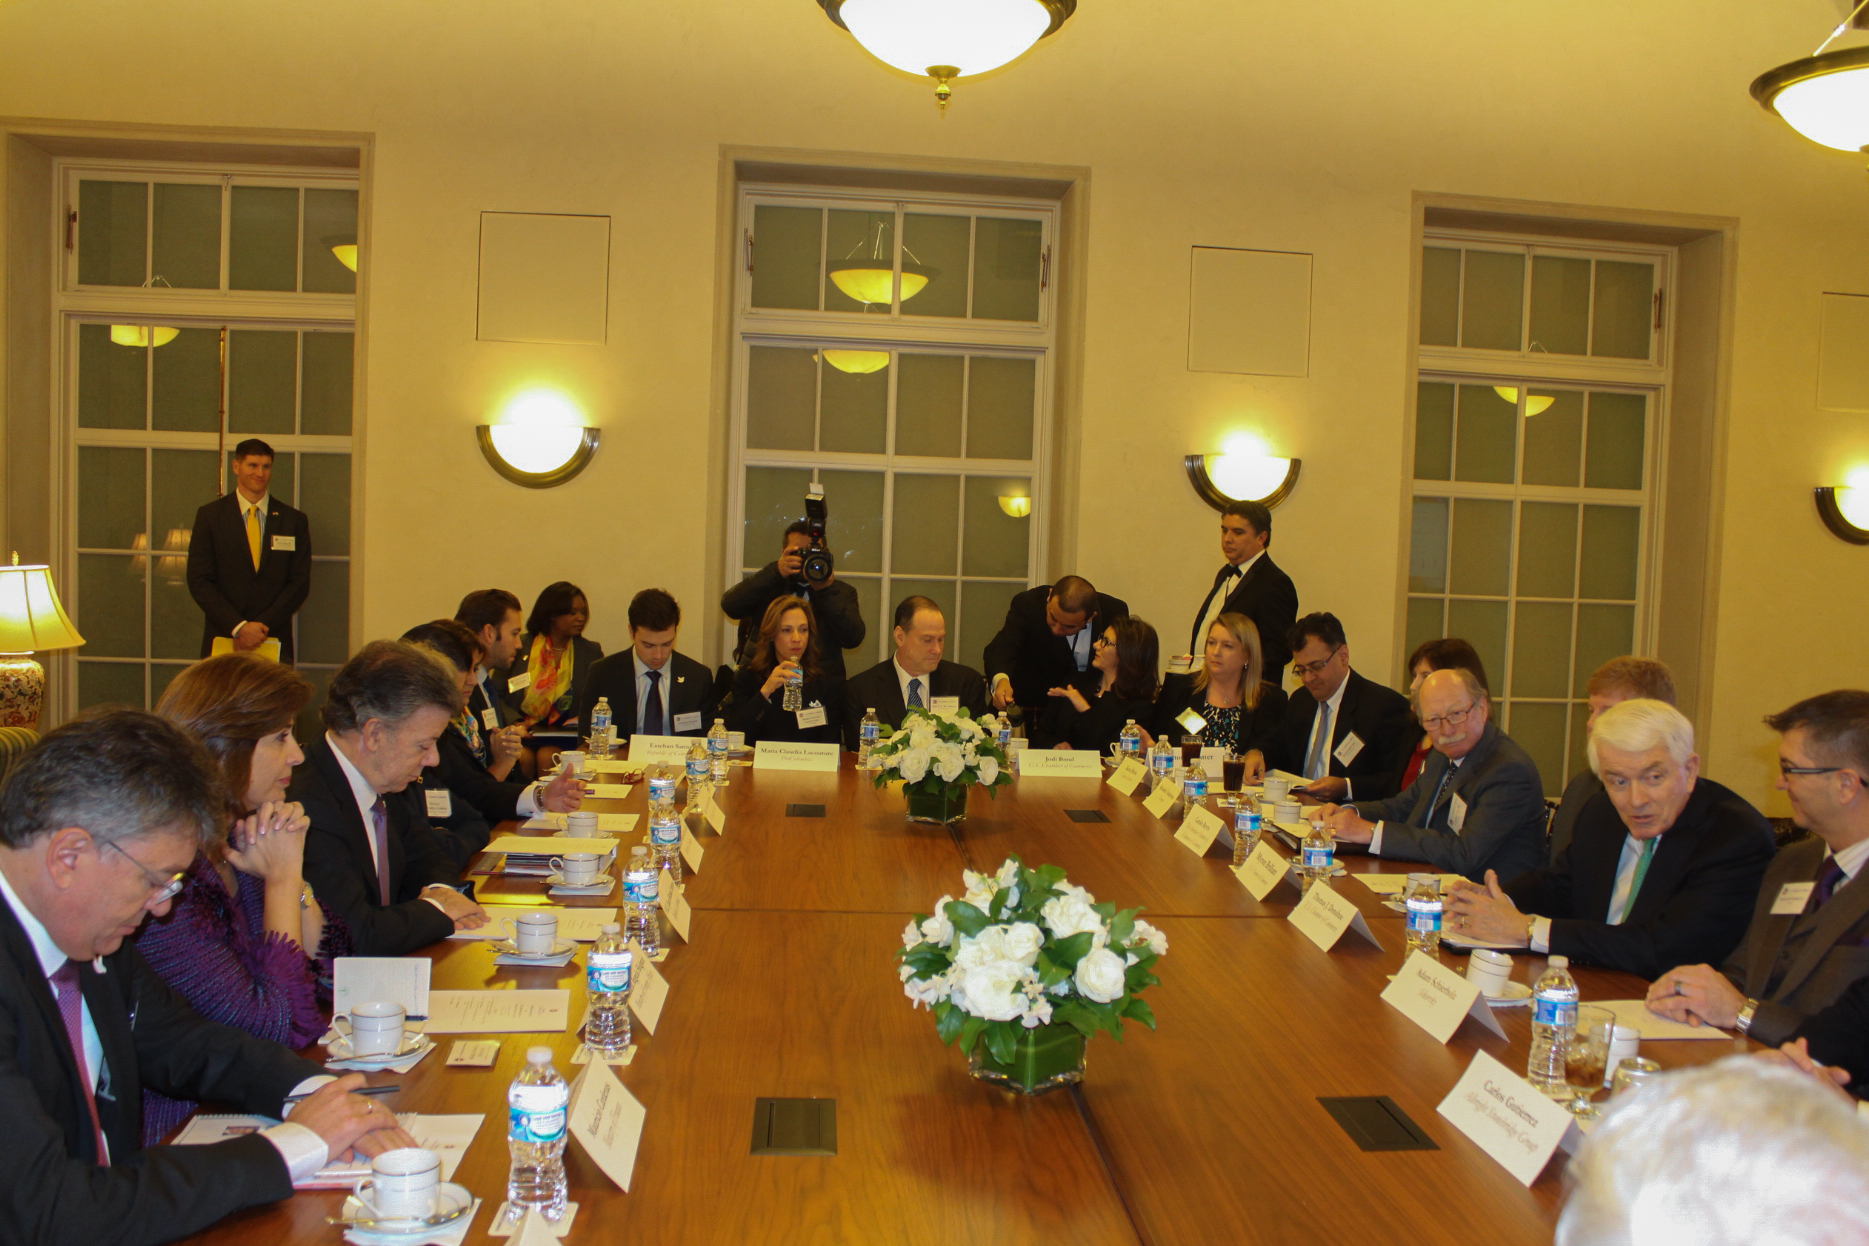 Presidente Santos, en compañía de la Canciller Holguín, presentó la ‘Visión para el futuro de Colombia y la relación Colombia-Estados Unidos’ a empresarios en la Cámara de Comercio